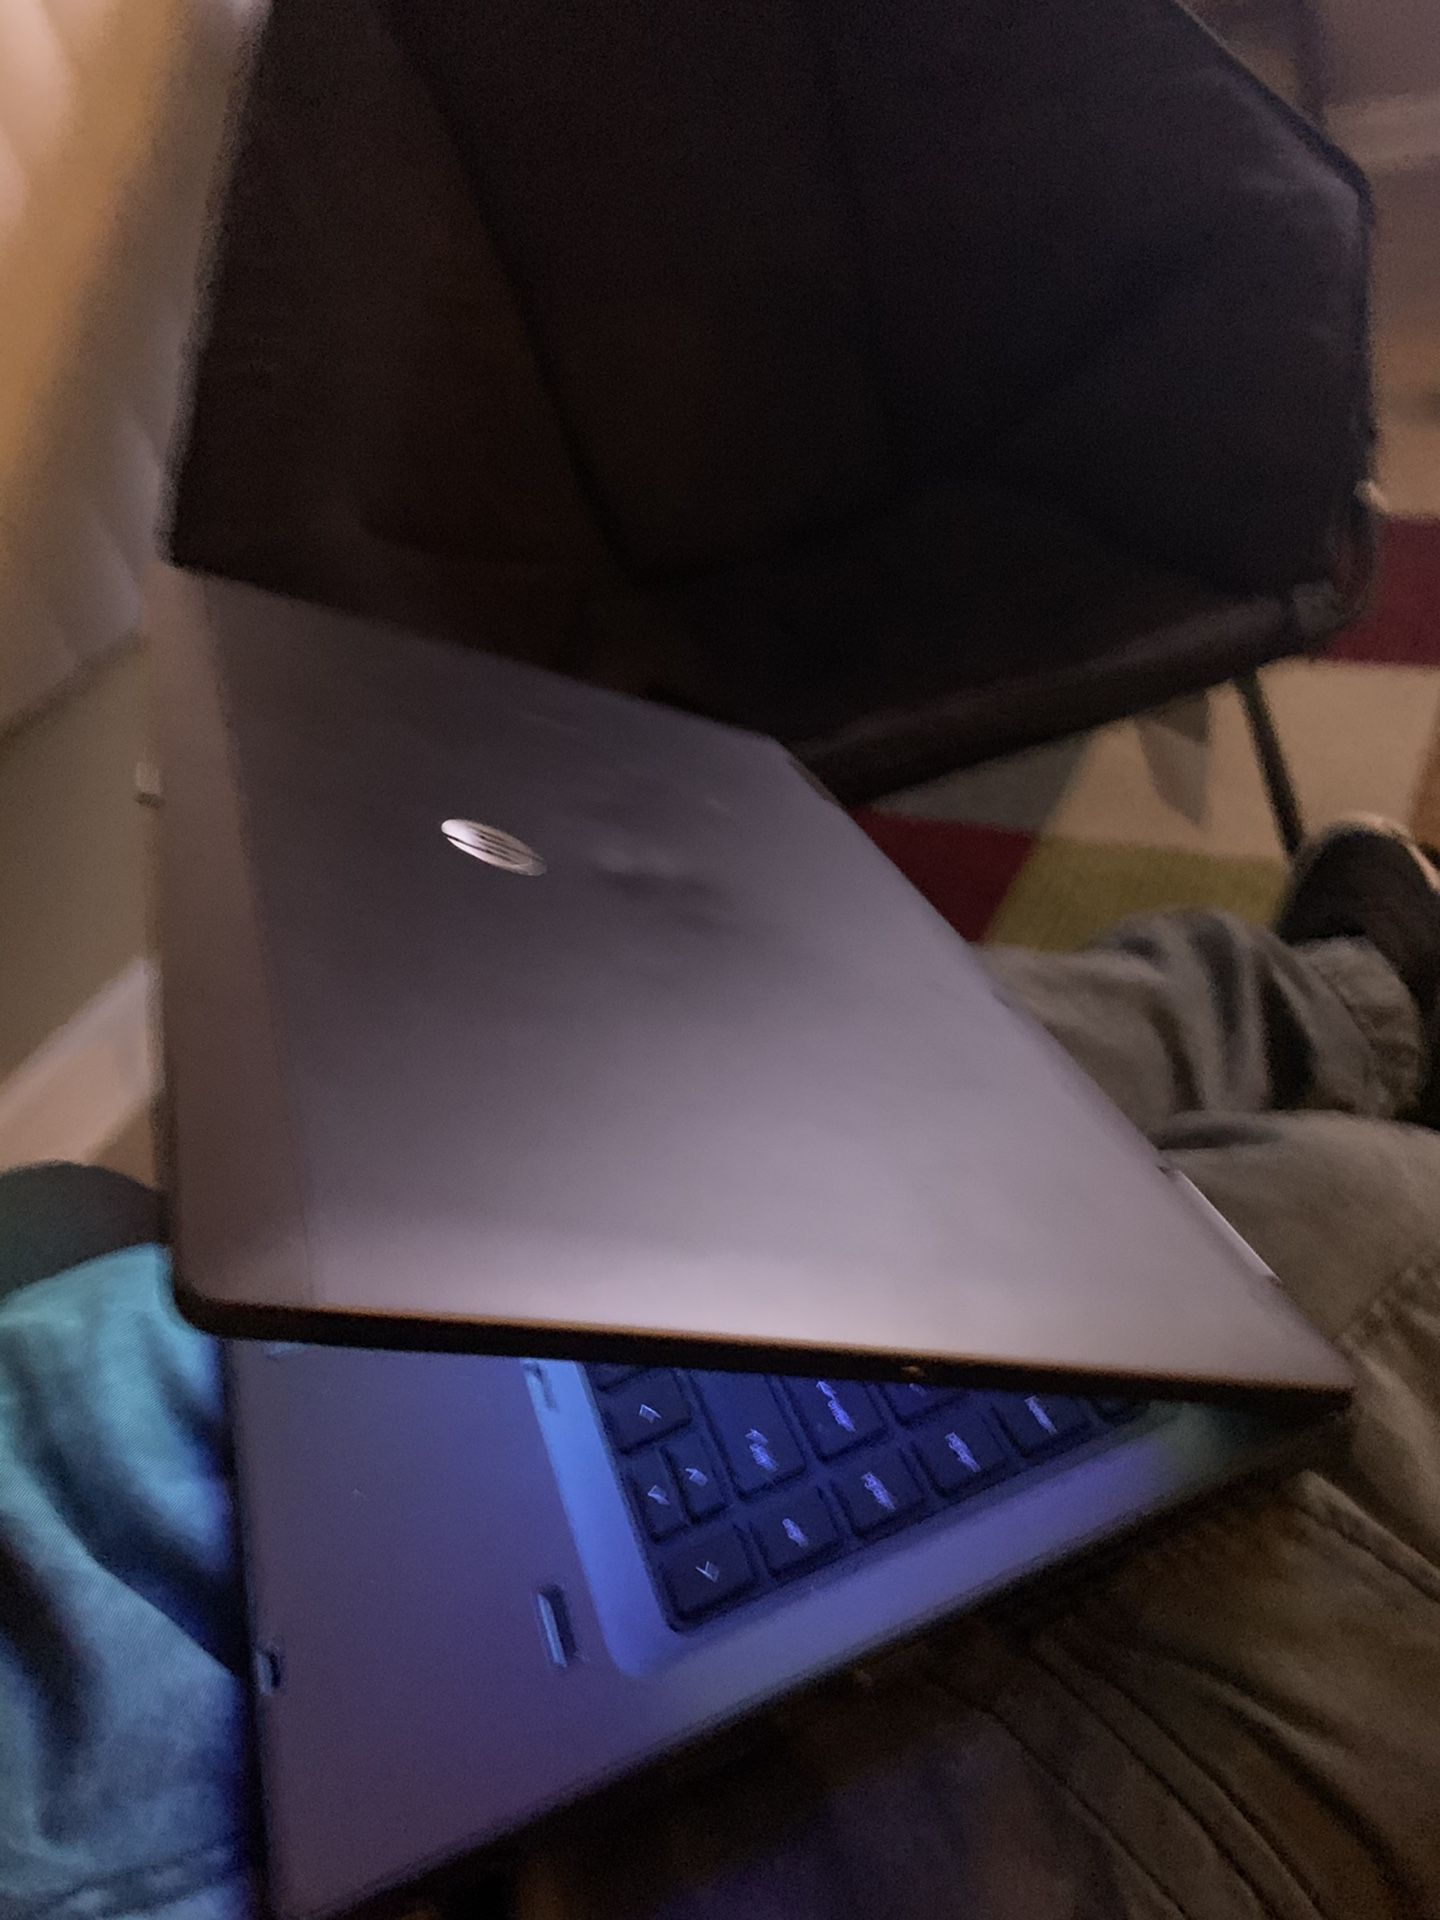 Hp probook laptop